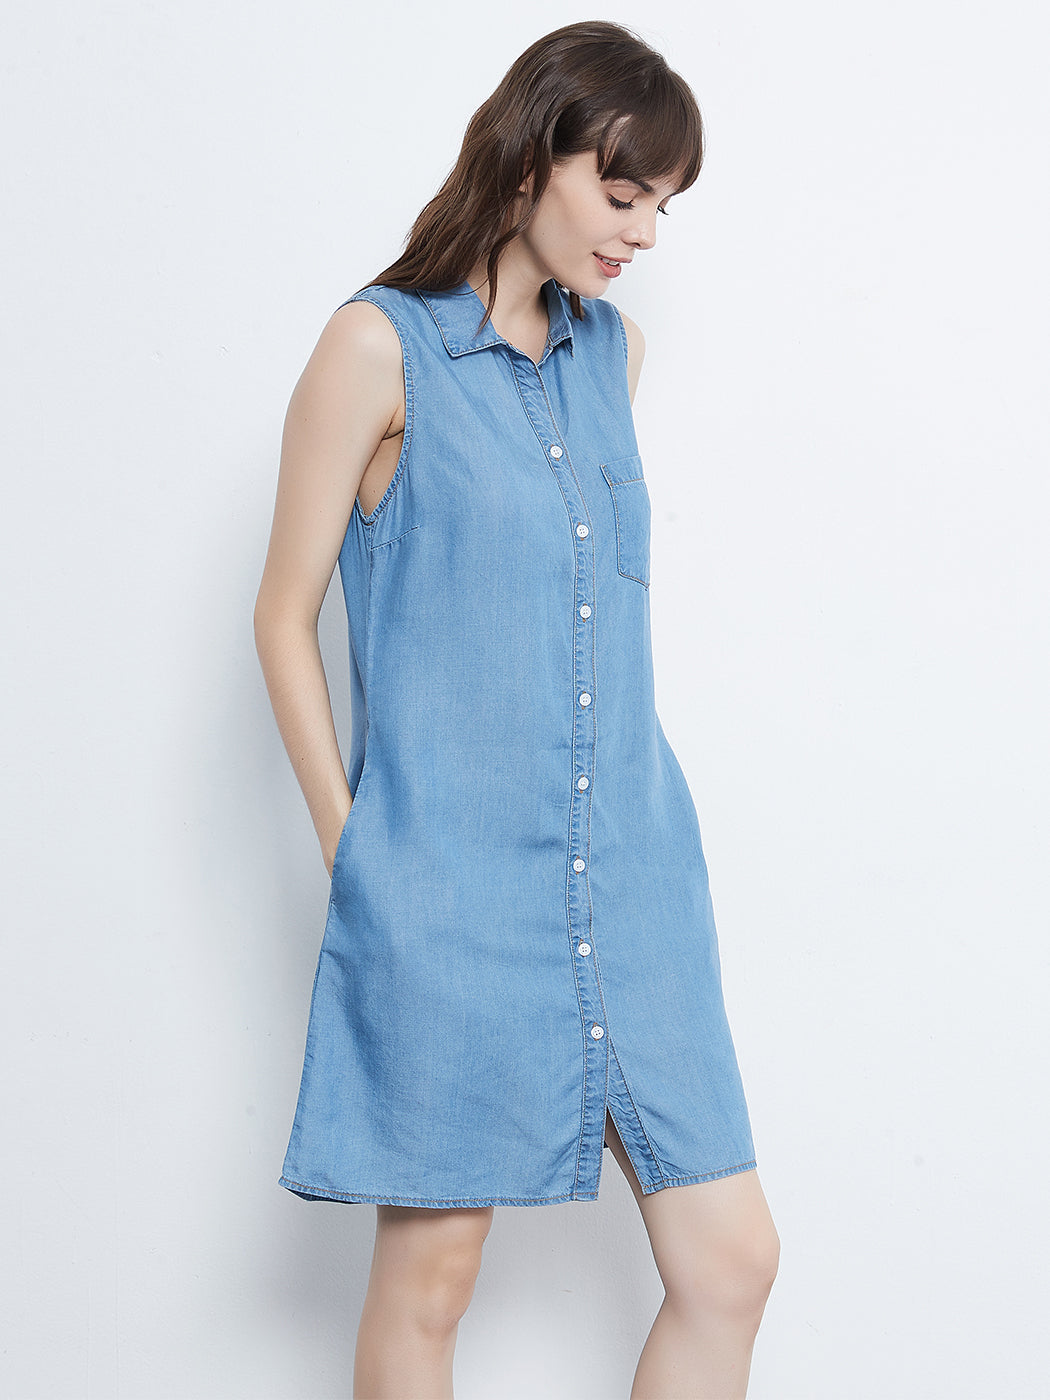 Sleeveless shirt dress - Blue - Kids | H&M IN